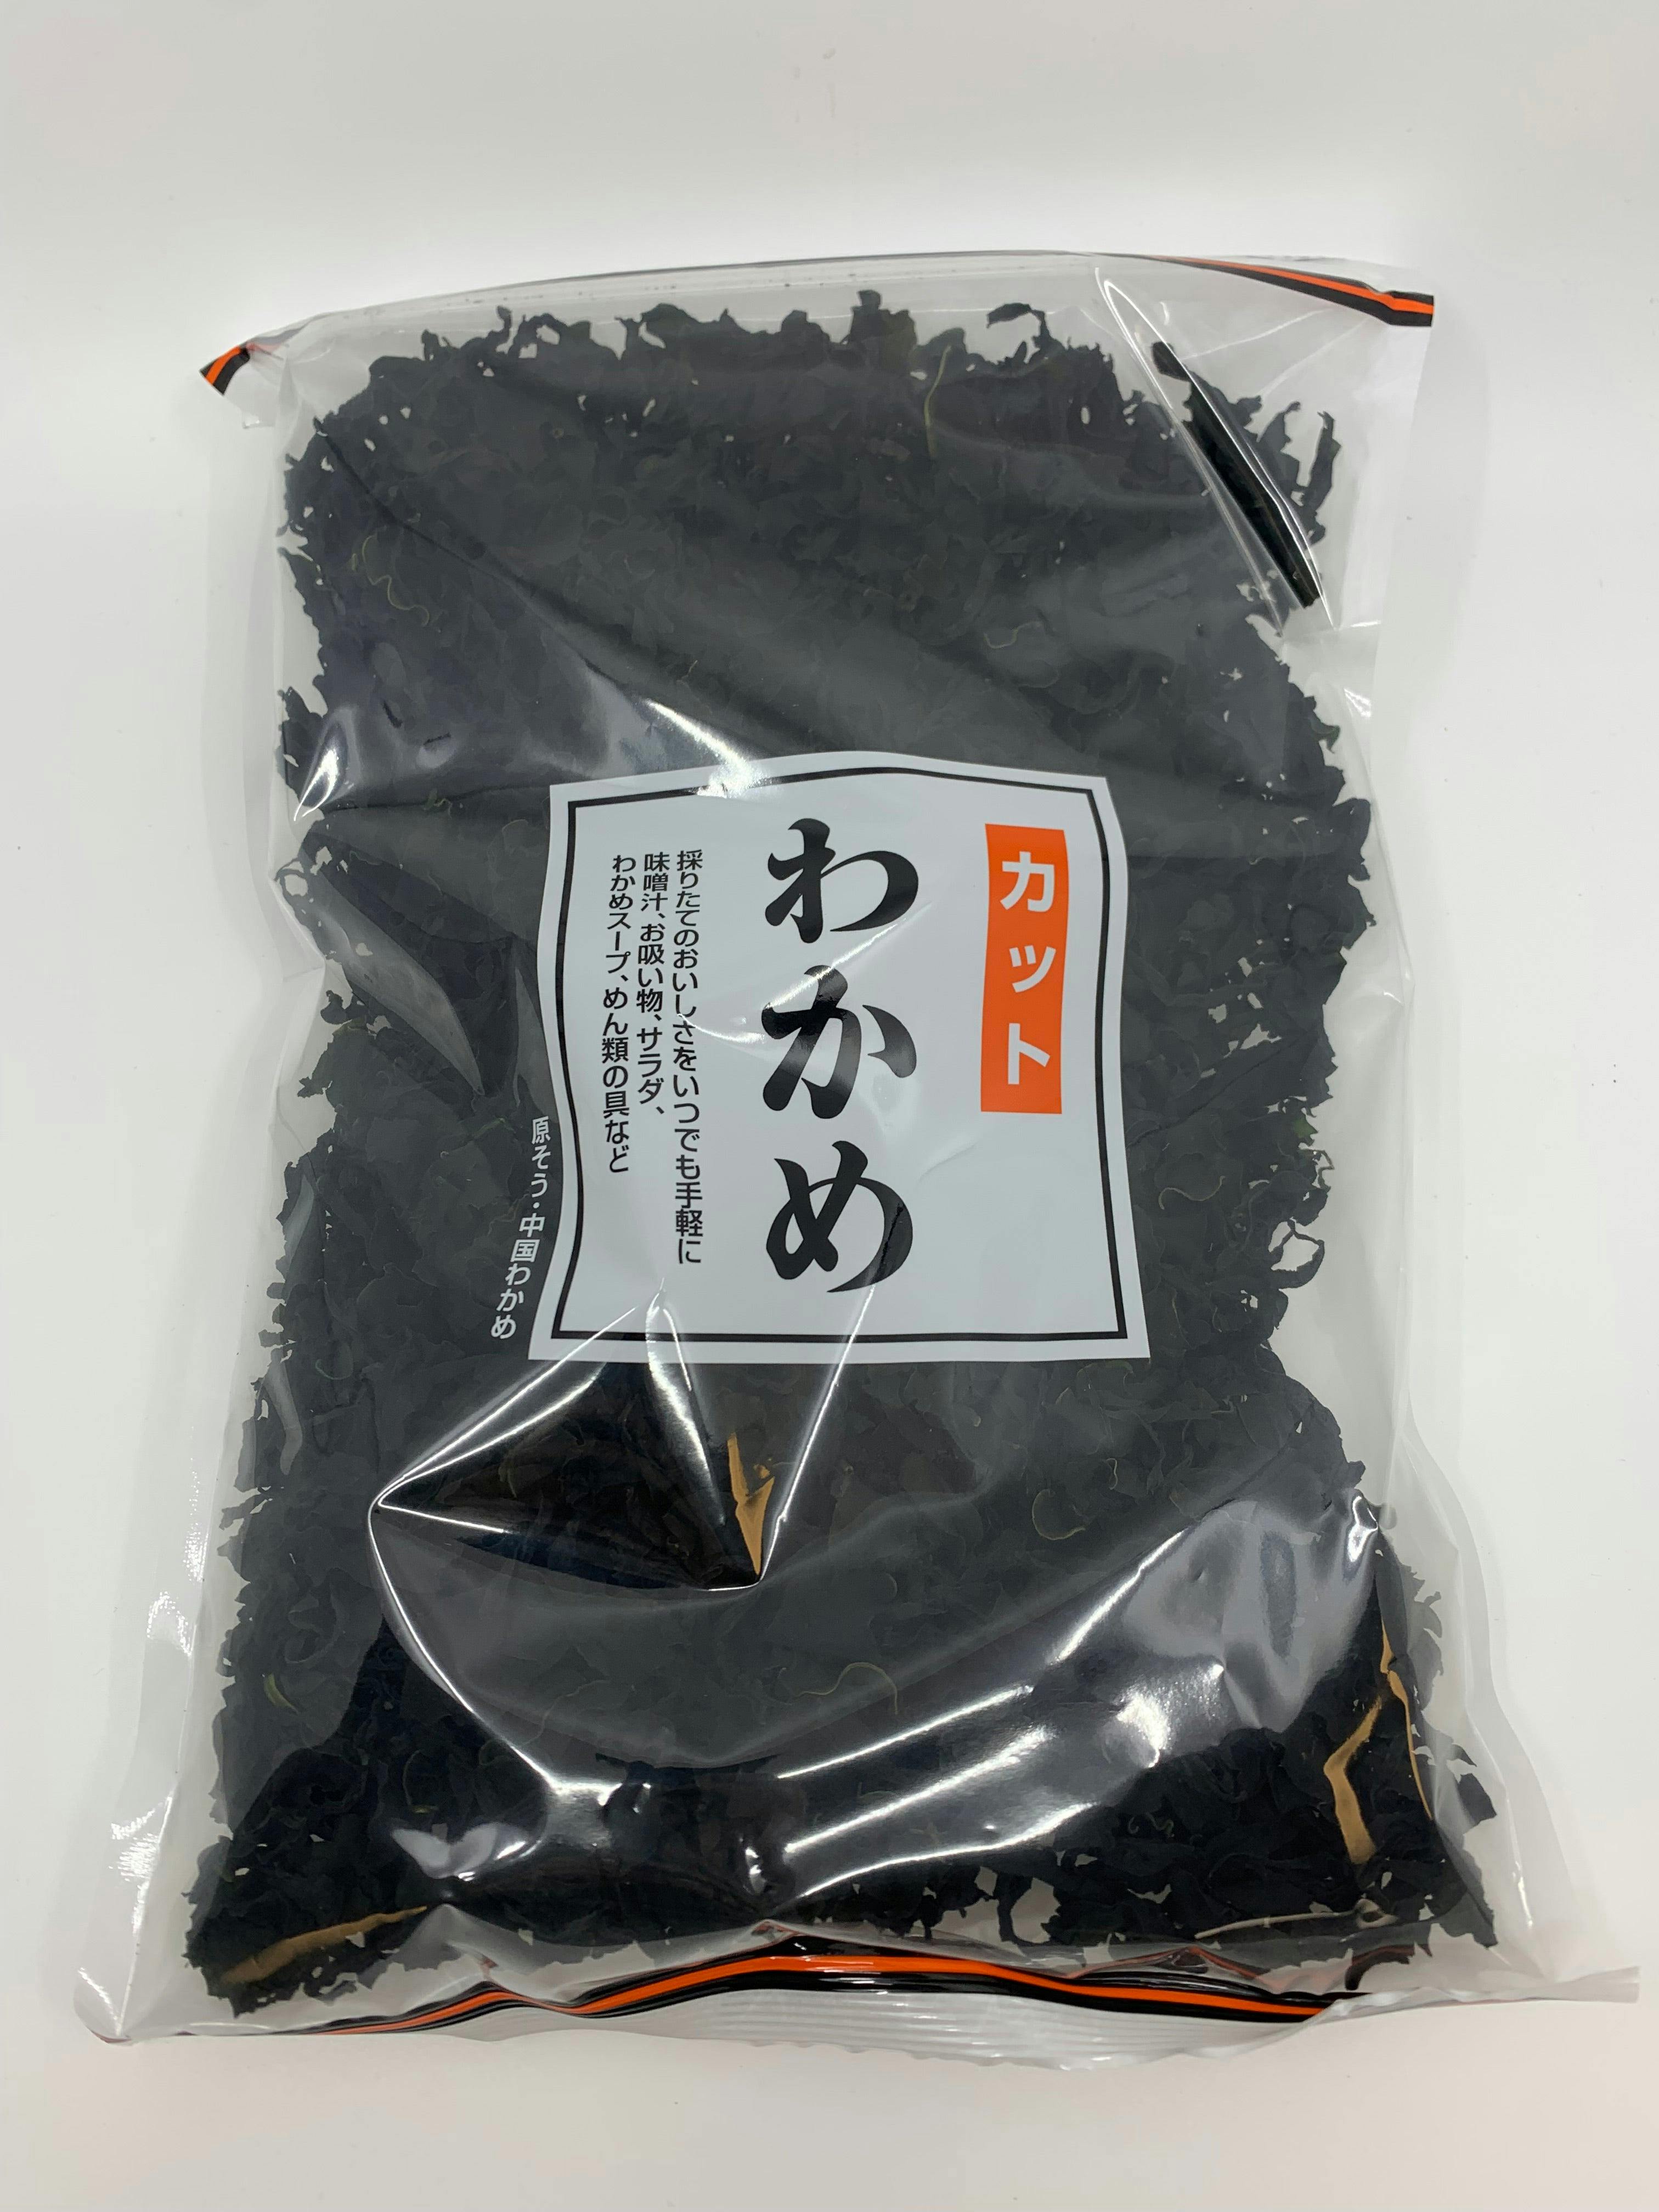 Fujisawa Cut Wakame 干海带 Dried Seaweed 4.2 oz